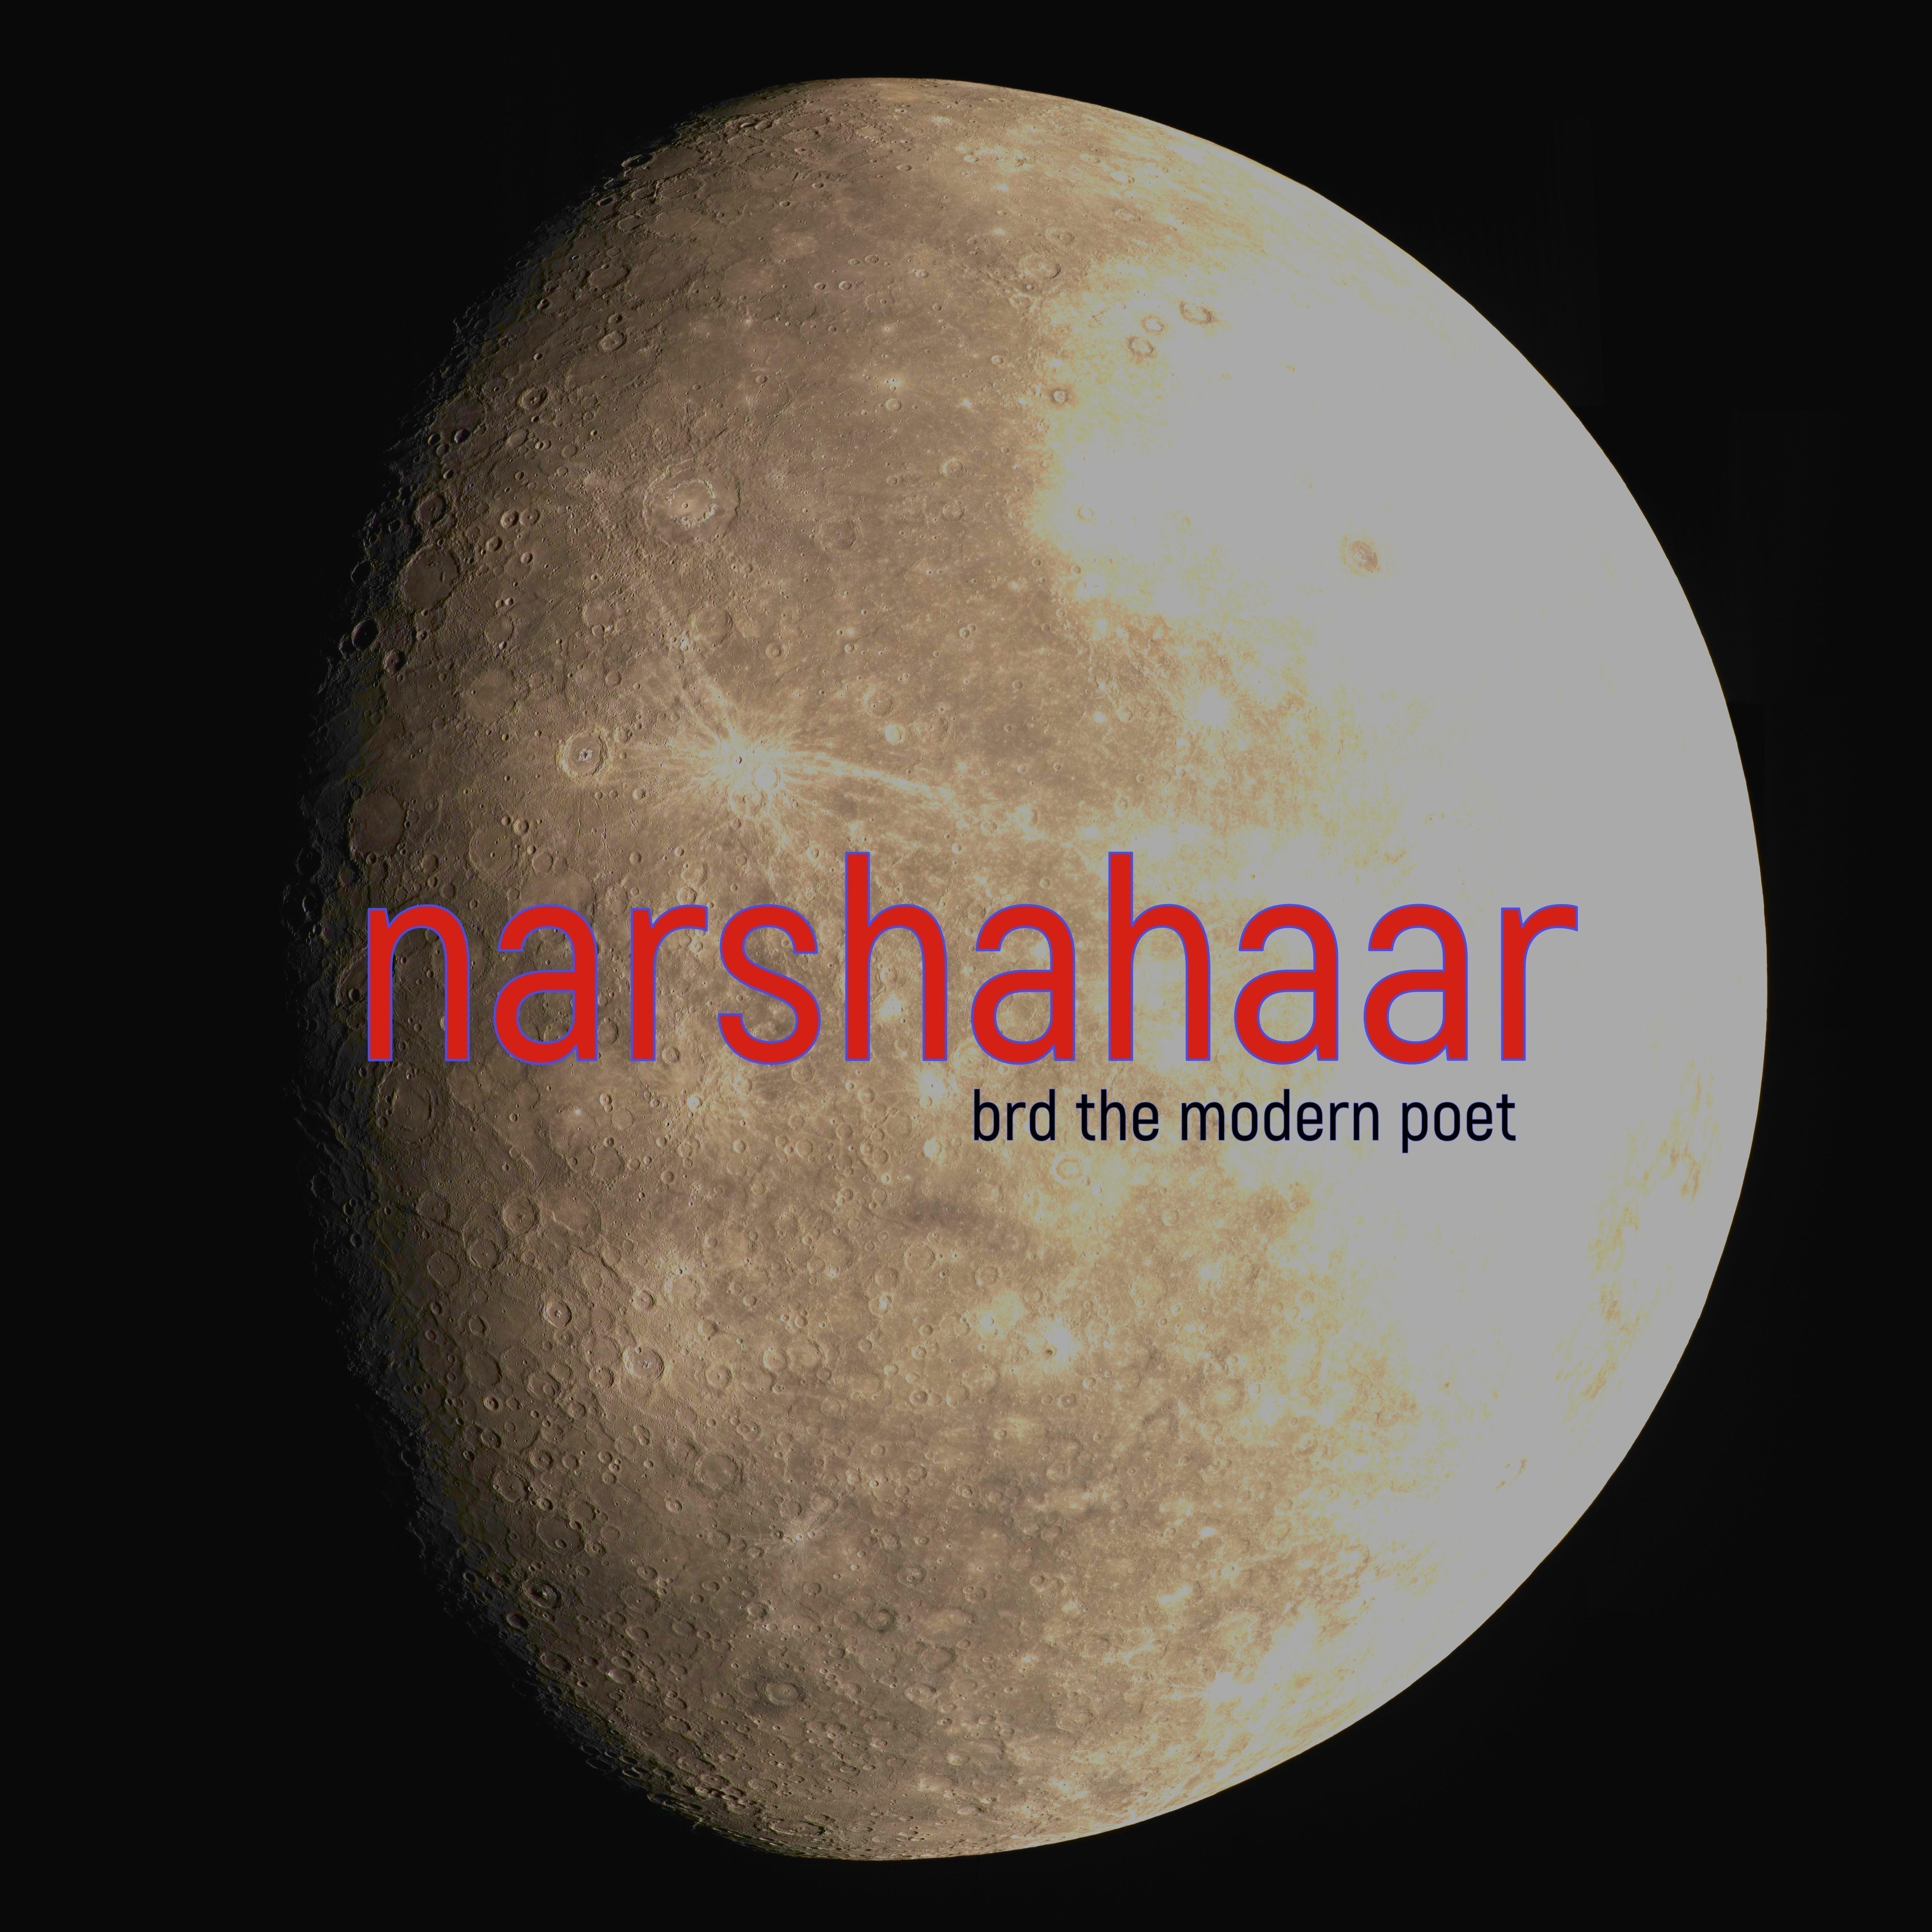 Narshahaar